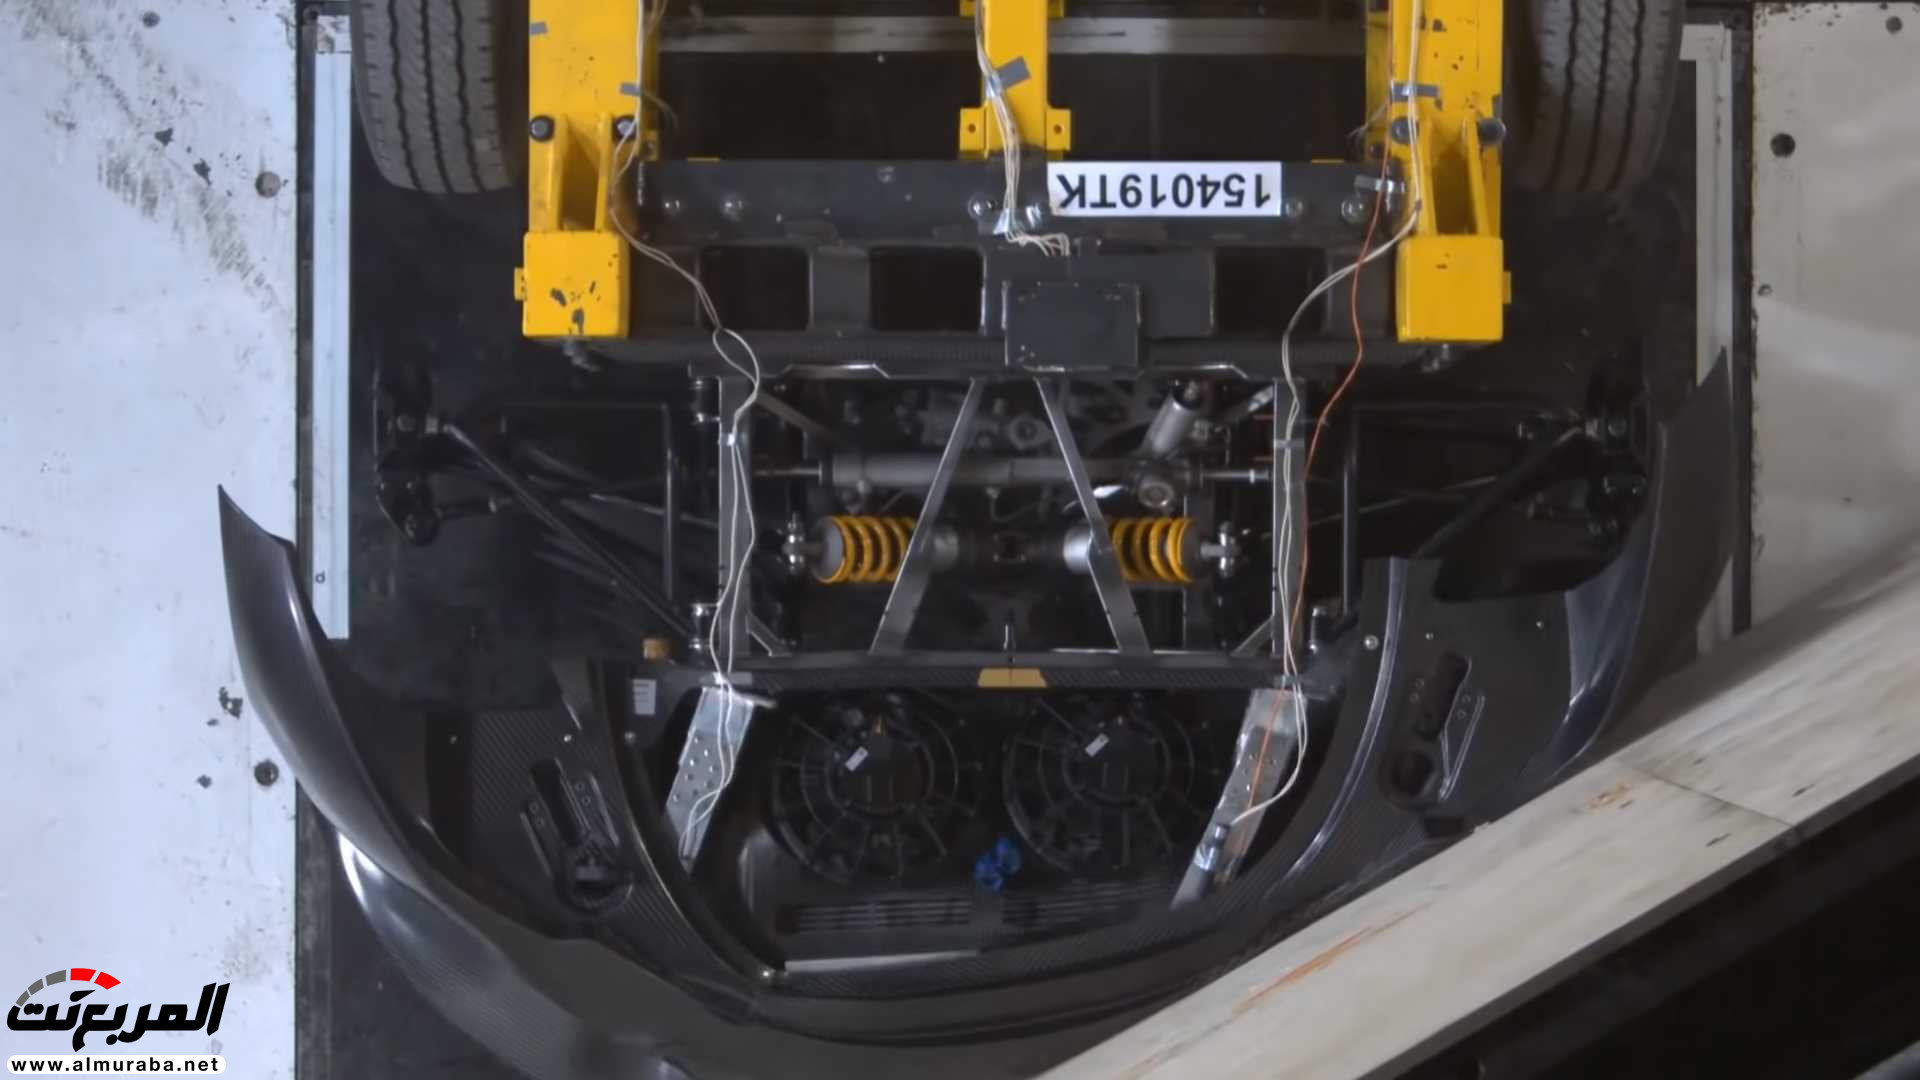 "بالفيديو" اختبار تصادم سيارة كوينيجسيج بقيمة 7.5 مليون ريال! 3